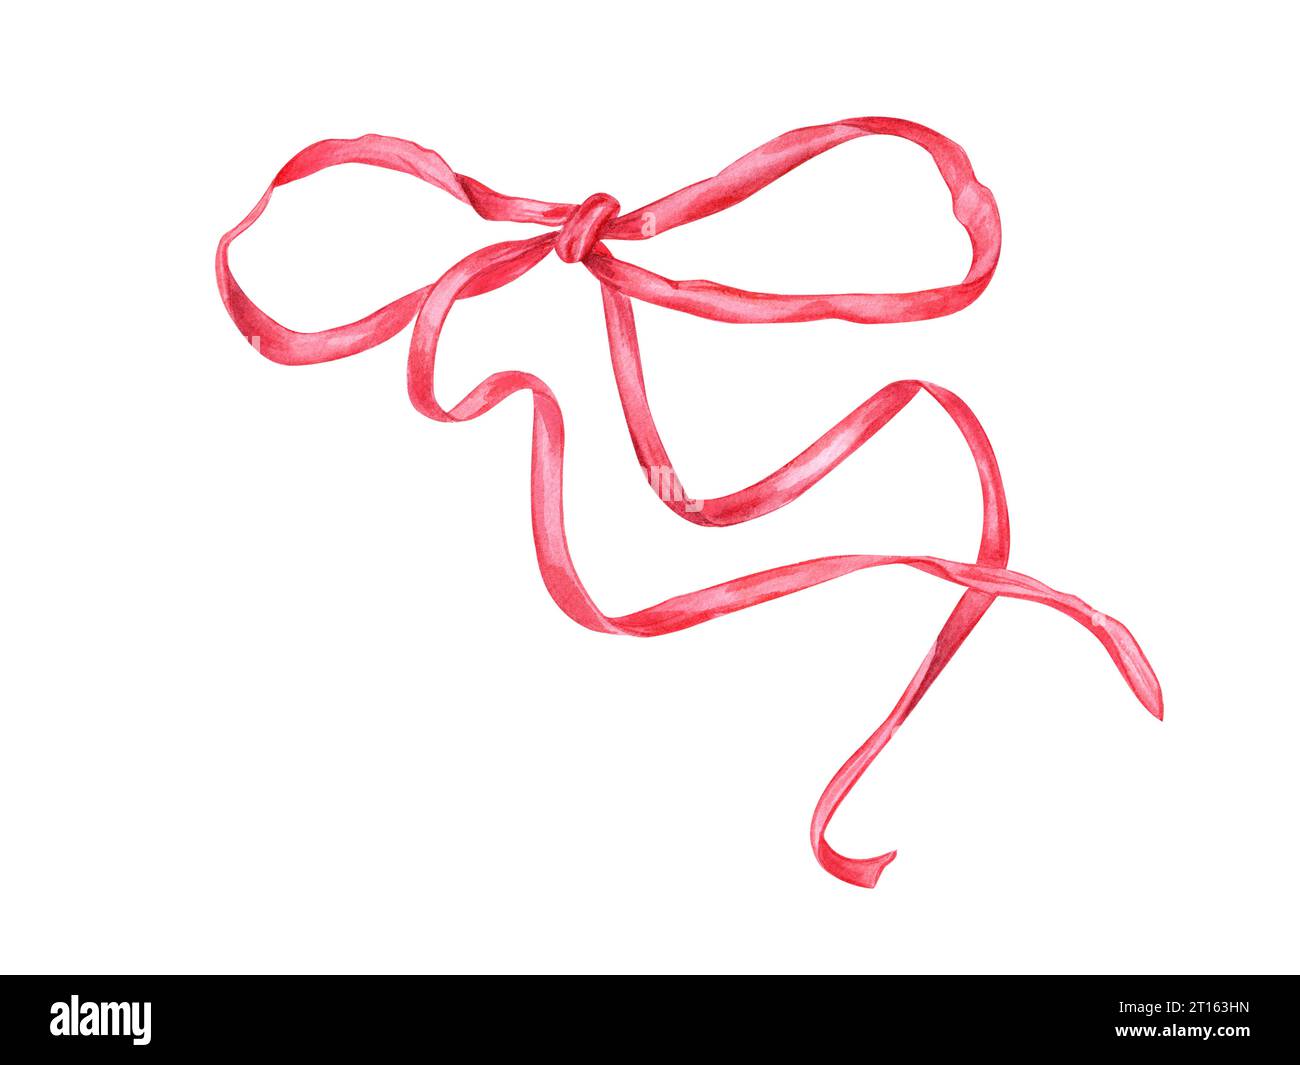 Rote Schleifen mit langen Bändern. Aquarellabbildung. Designelement für die Dekoration von Geschenken, Blumensträußen, Karten, Glückwunsch. Geburtstag Stockfoto